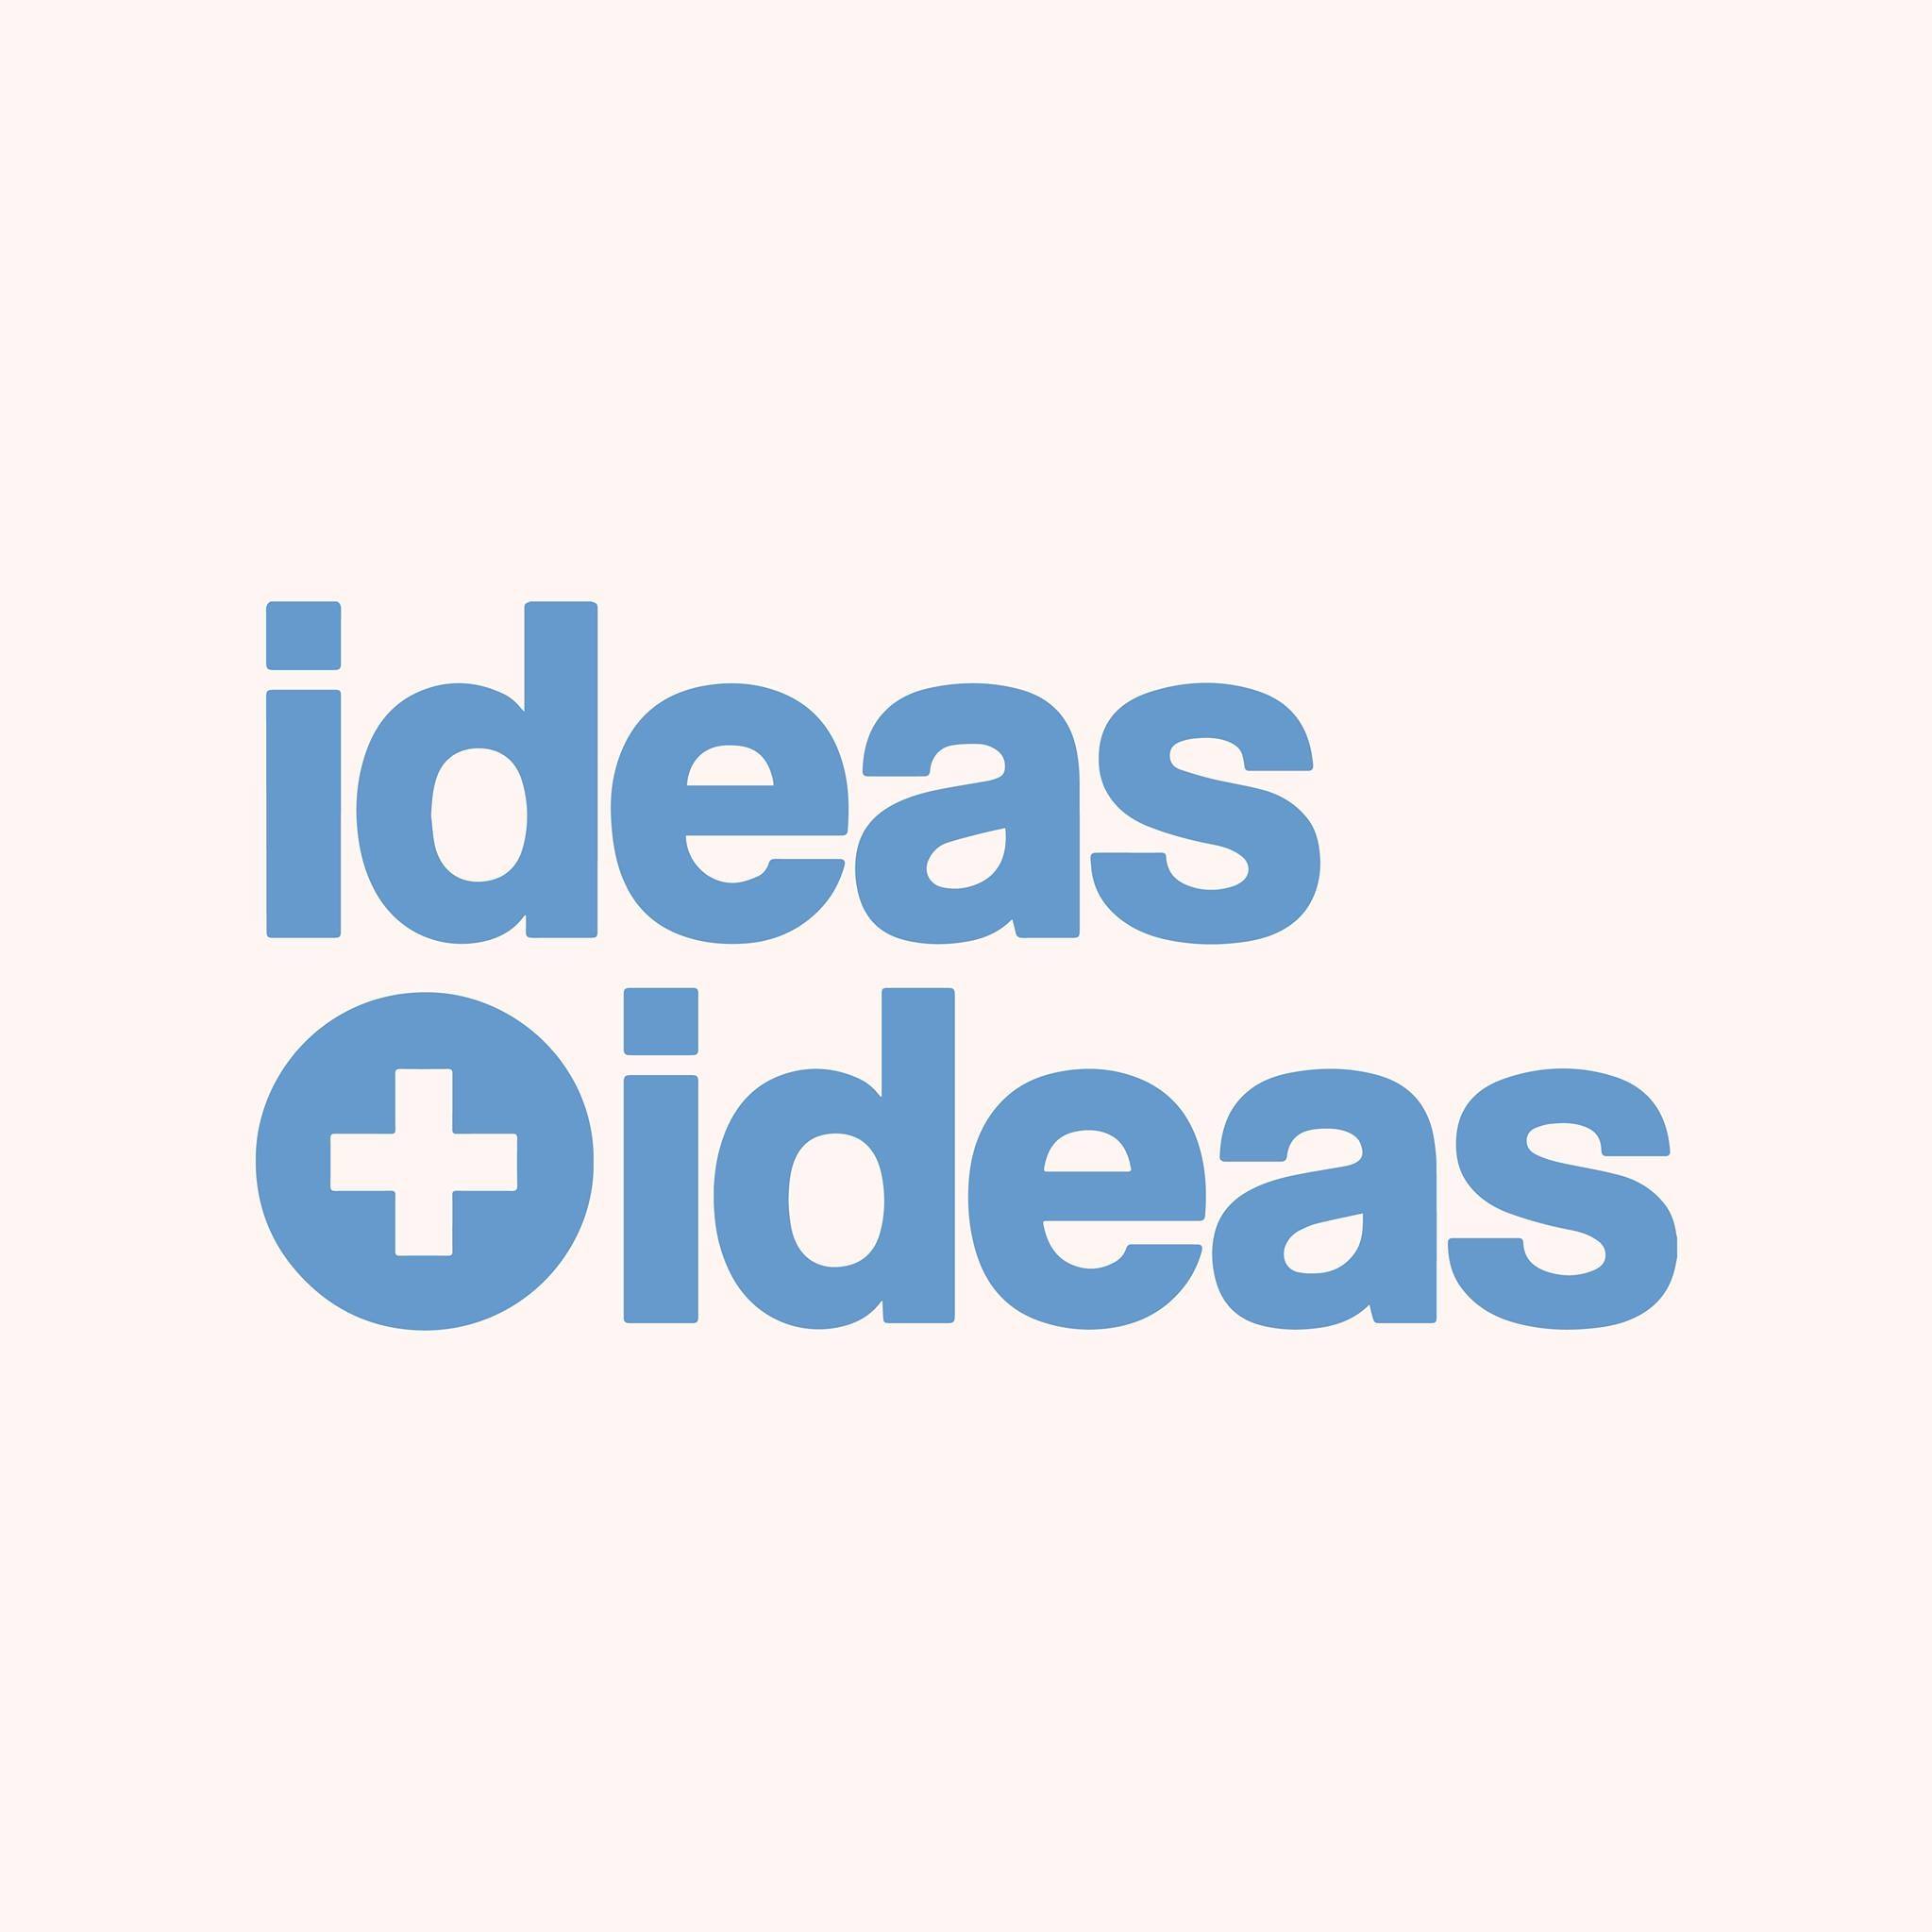 LIBRERIA IDEAS + IDEAS